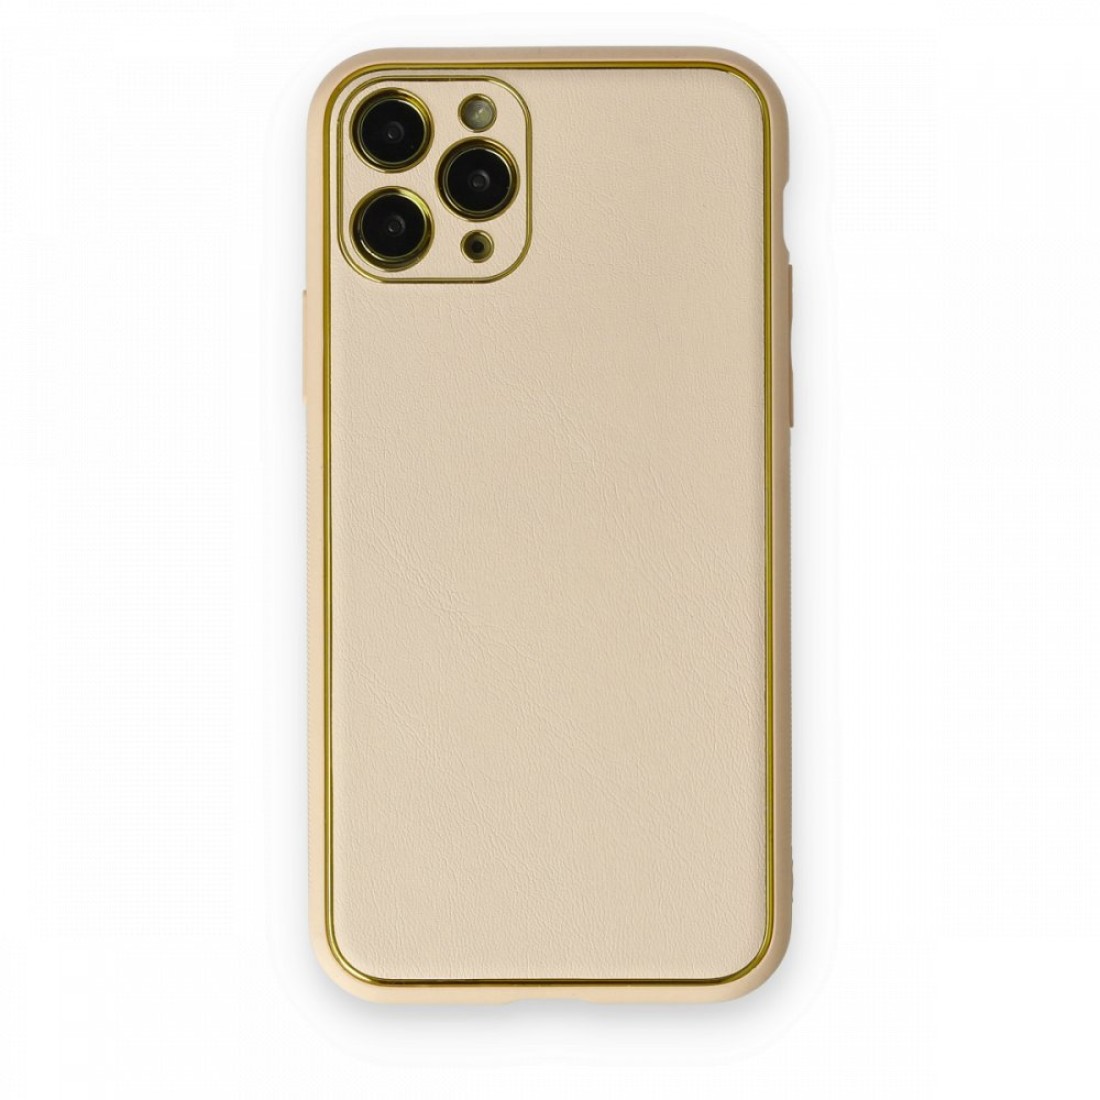 Apple iPhone 11 Pro Kılıf Coco Deri Silikon Kapak - Gold